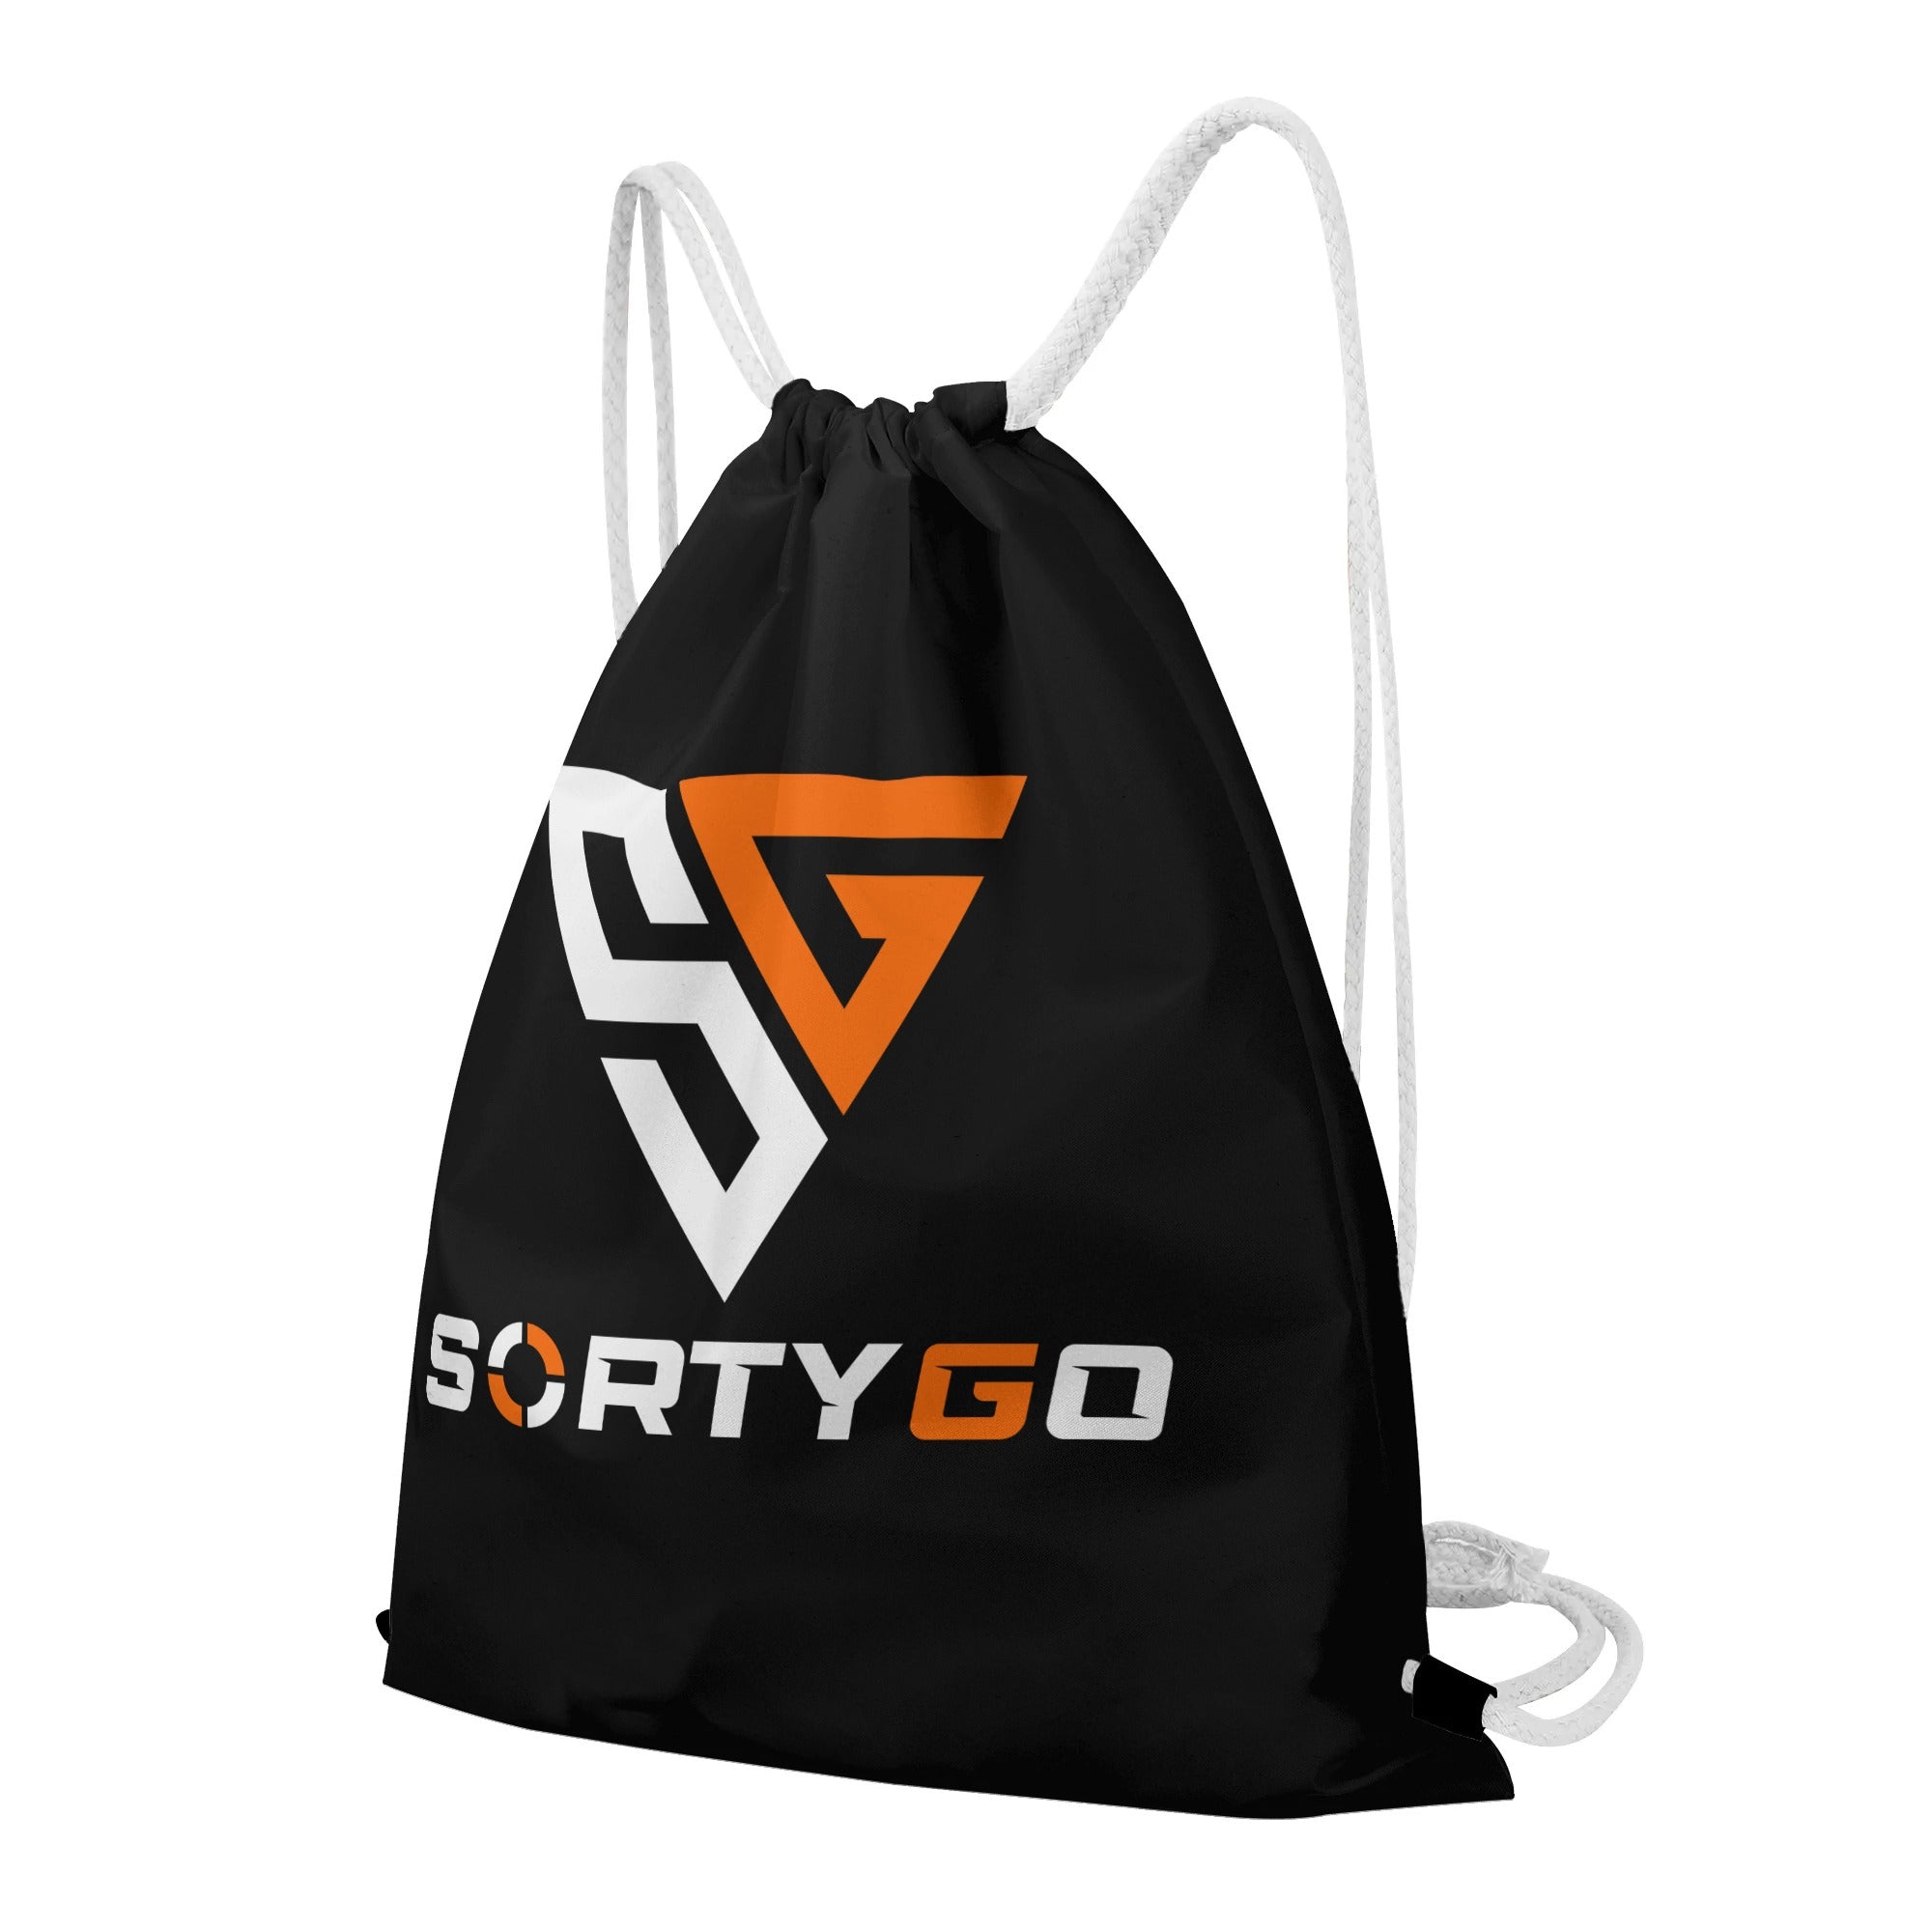 SORTYGO - Smorgasbord Drawstring Bag in